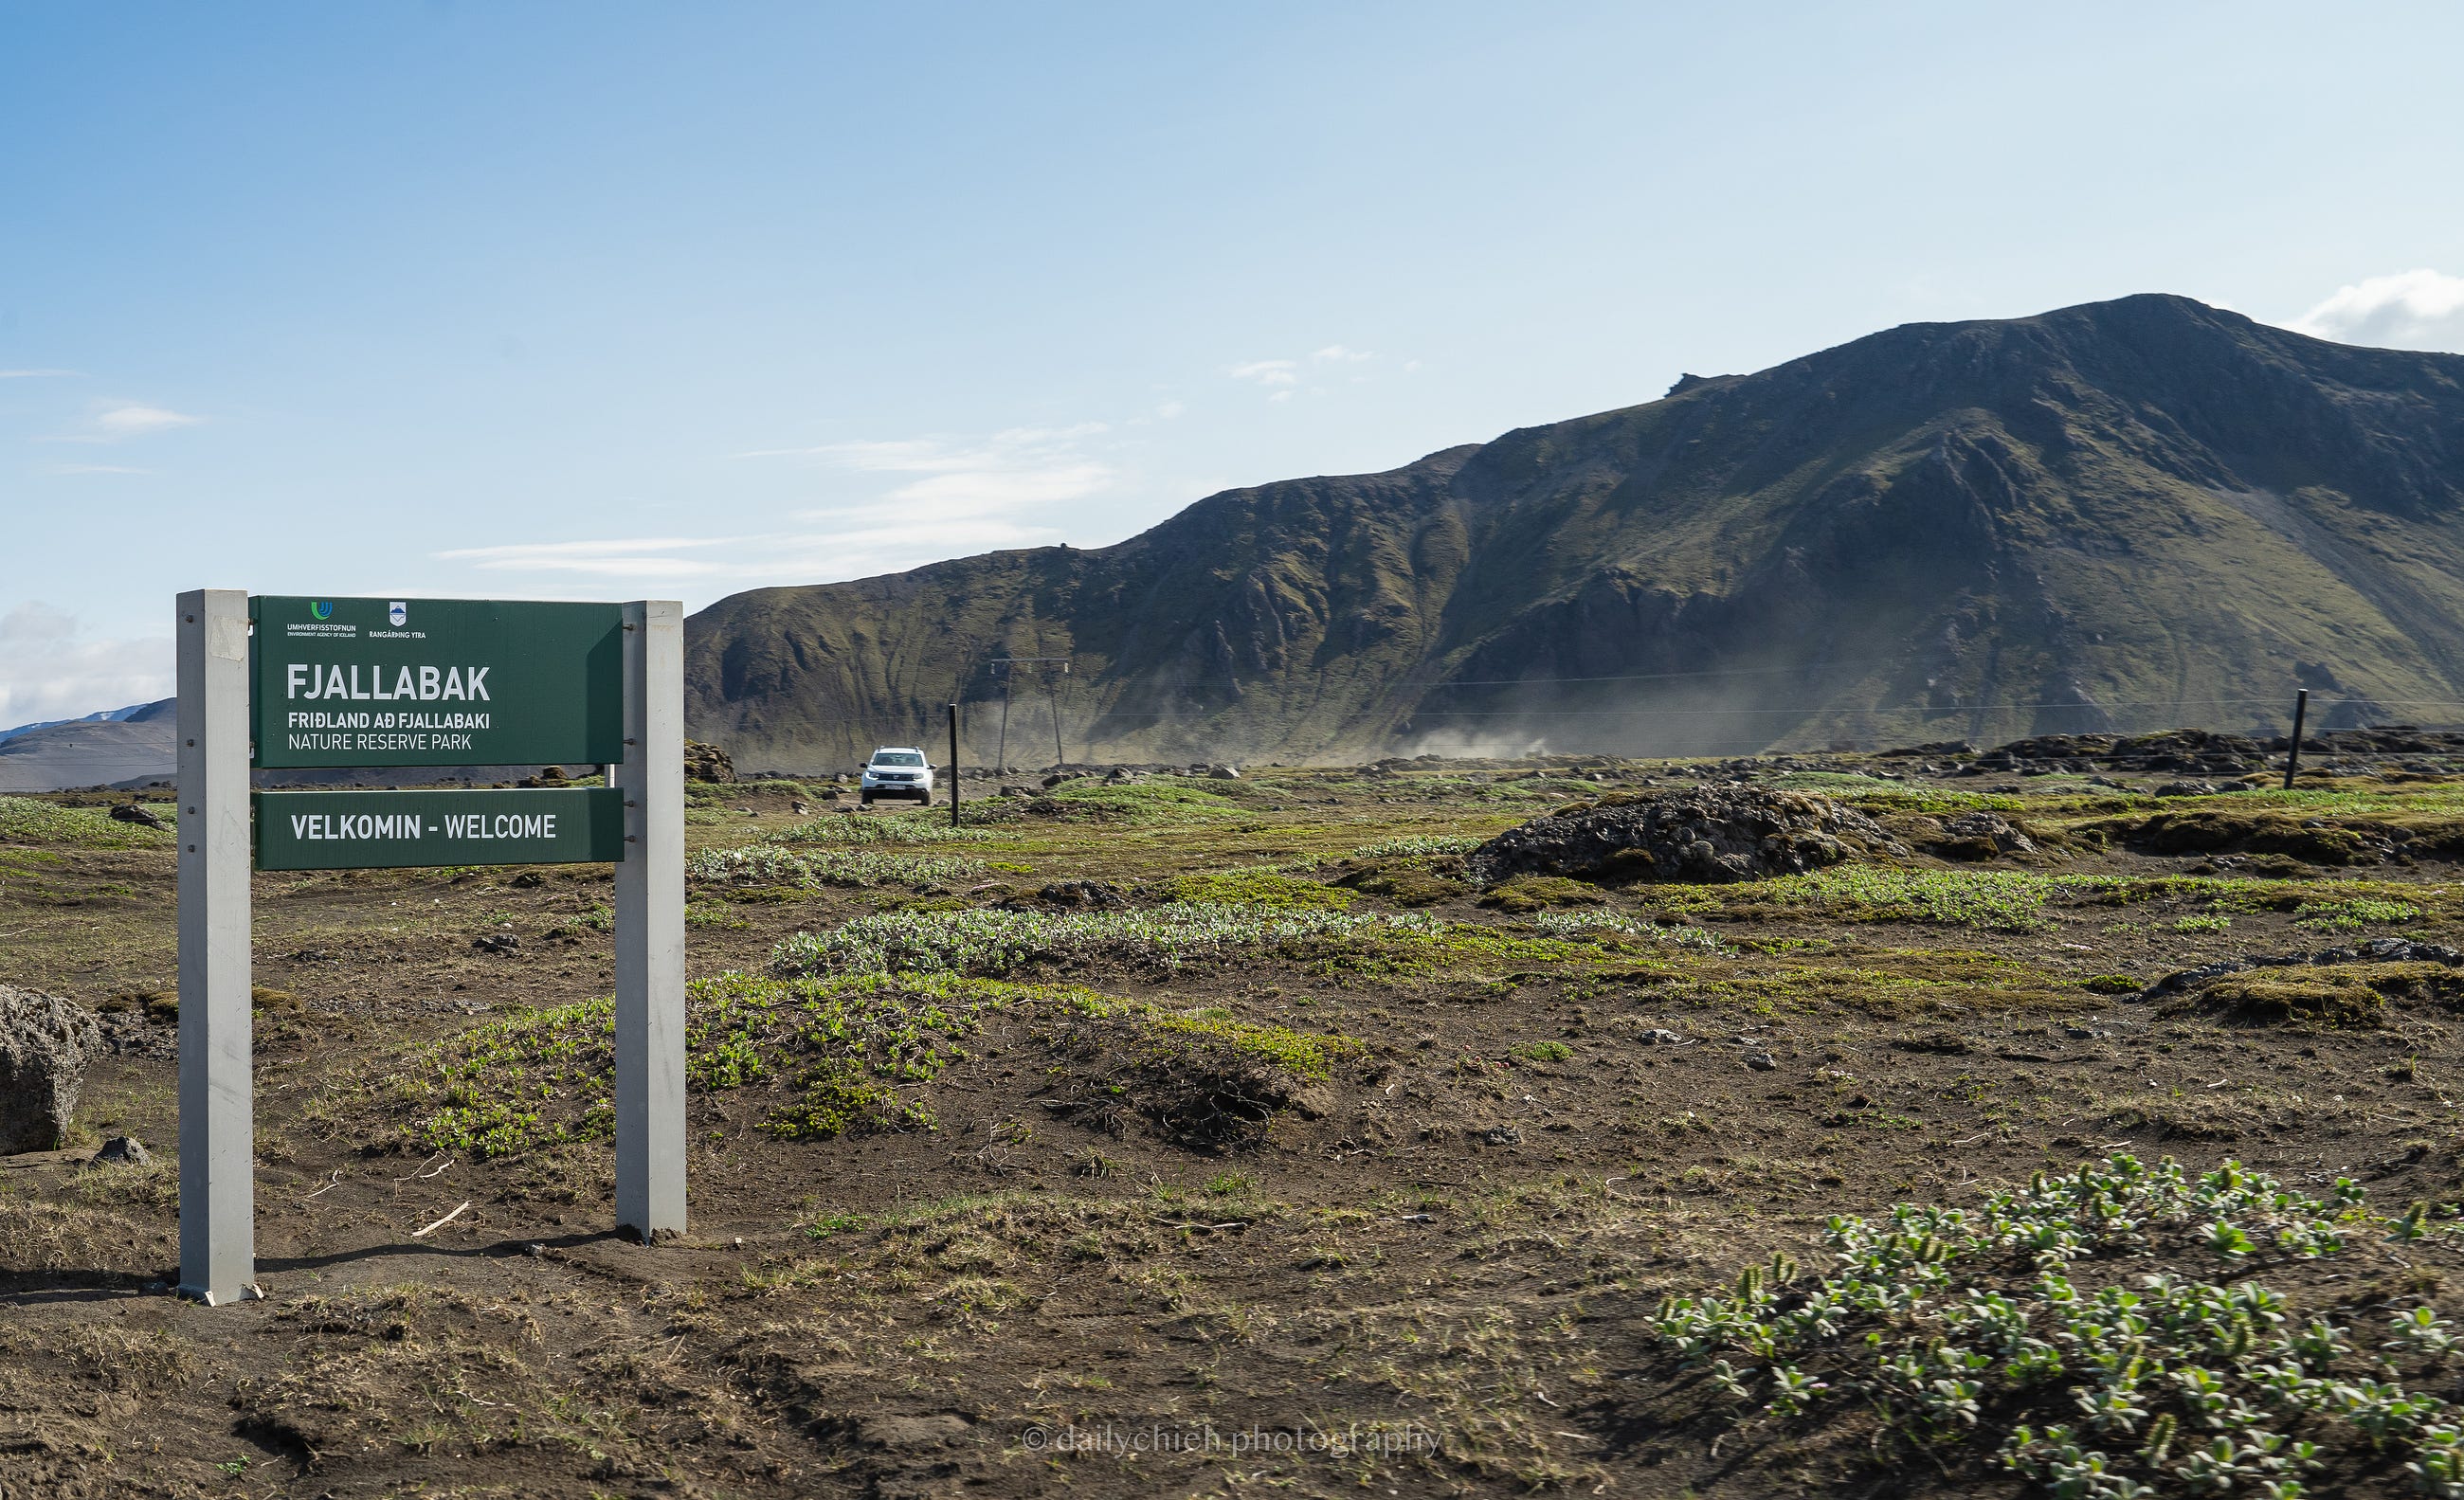 進入 Fjallabak 自然保護區後，風景地貌開始有了變化